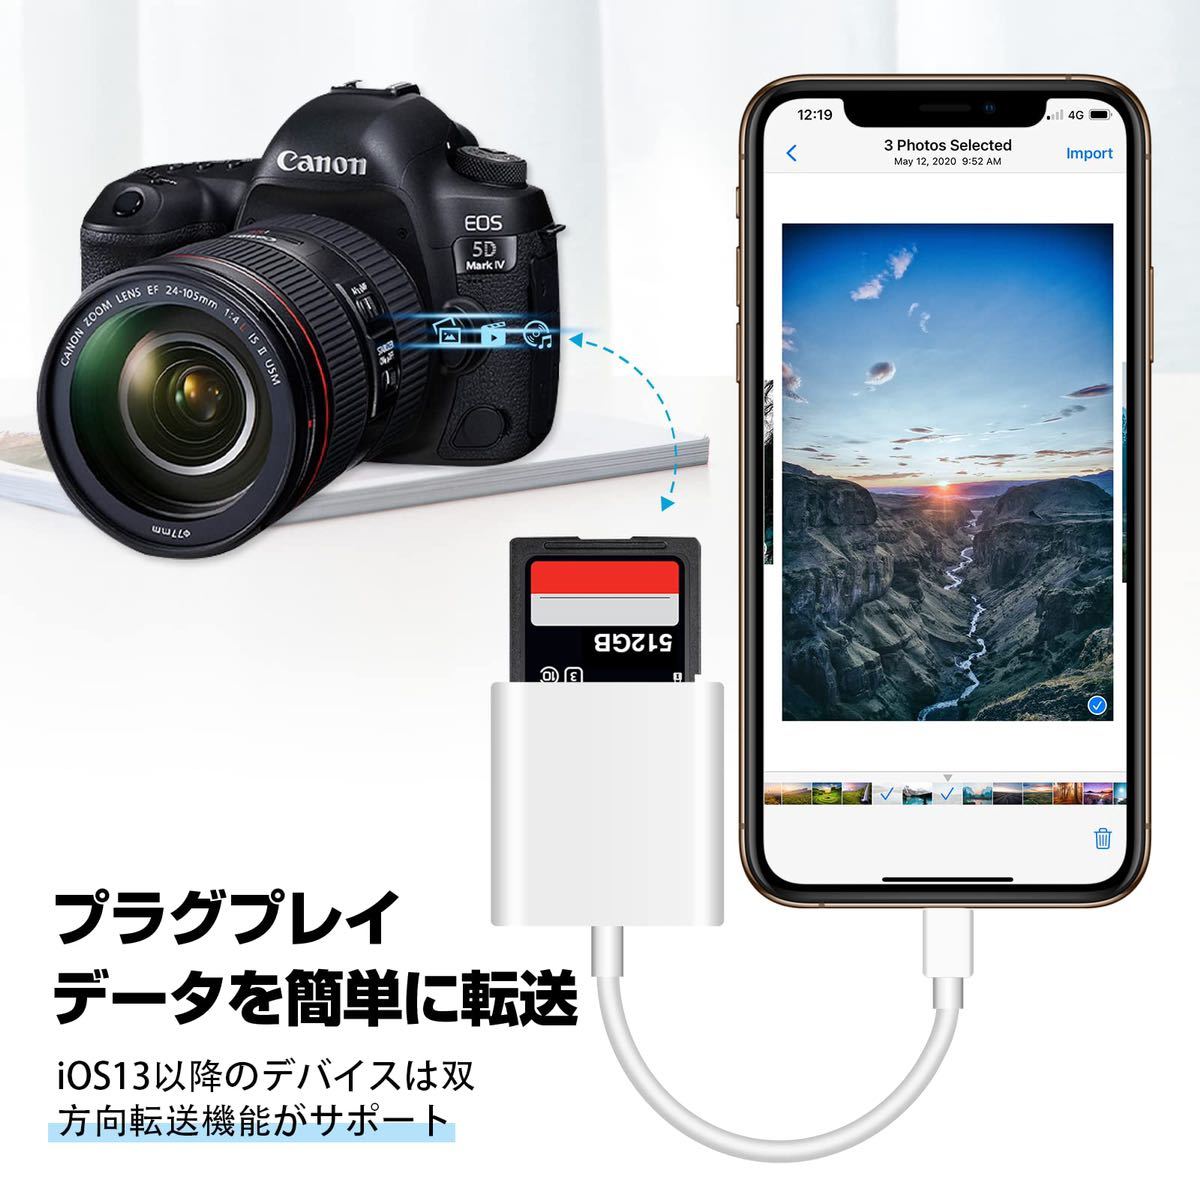 【未検品】iphone/ipad SDカードリーダー BB239 2in1 sdカードカメラリーダー SD/TF対応可能 カメラアダプタ iOS最新対応 双方向データ転送_画像3